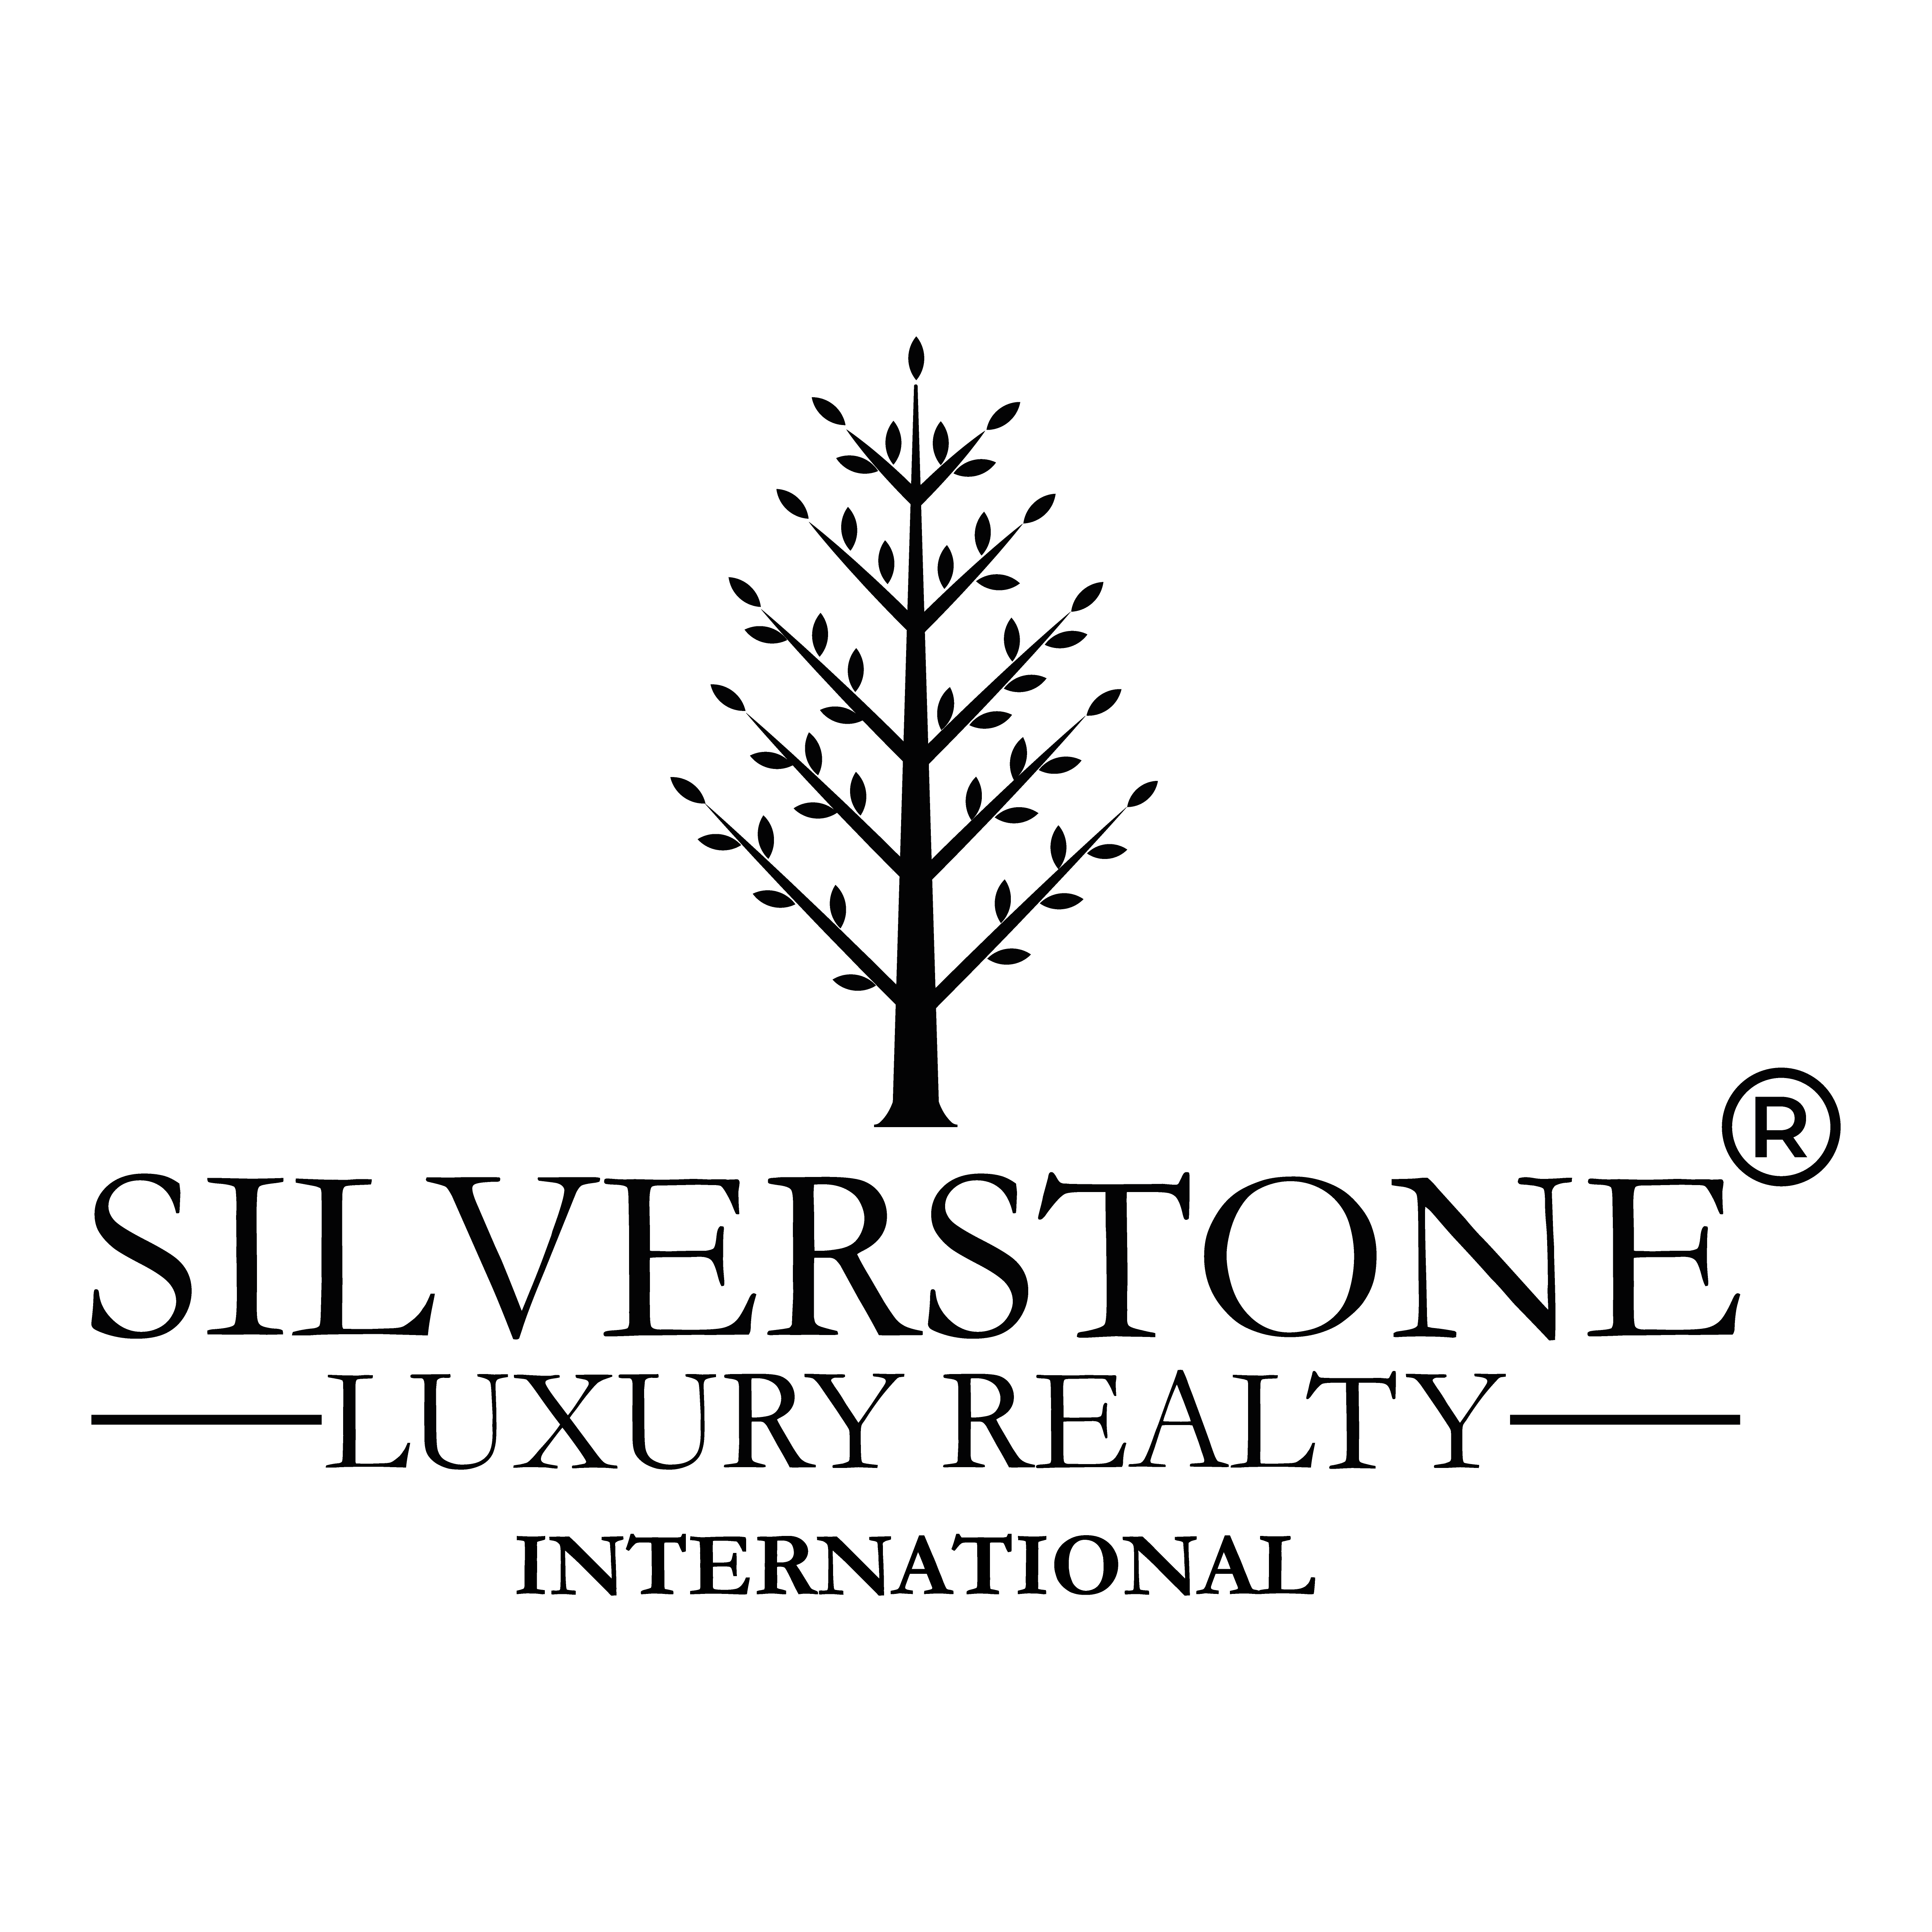 Silverstone Luxury Realty